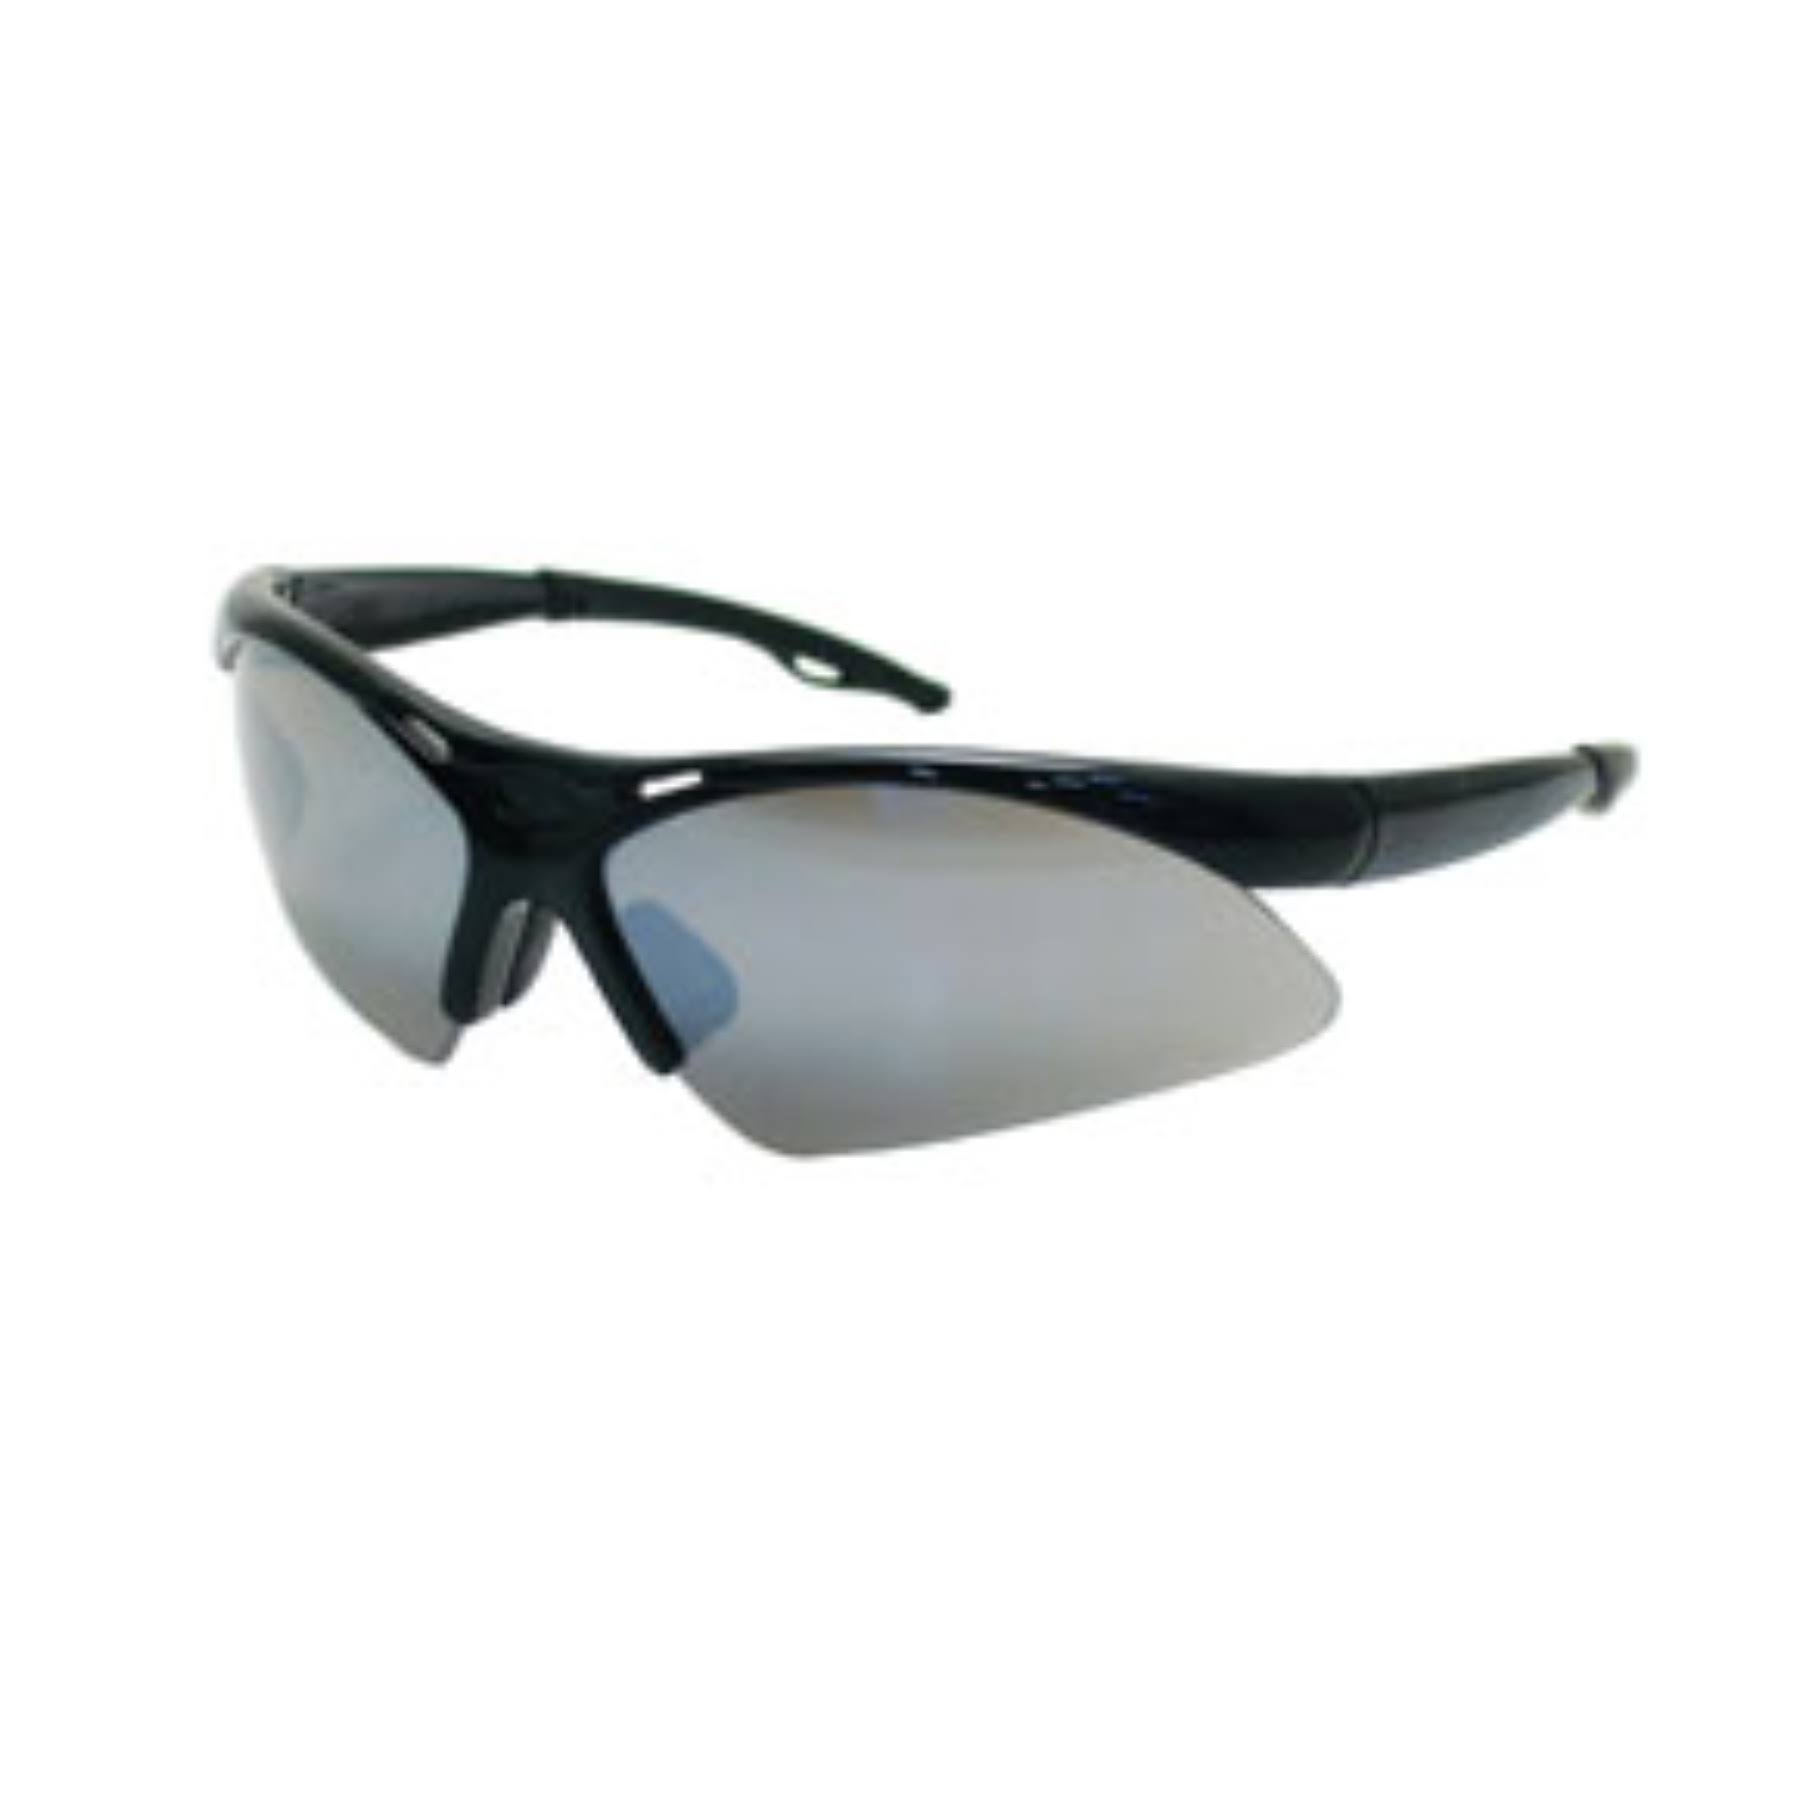 Sas Safety 540-0203 Safety Glasses - Diamondback, Wraparound Black